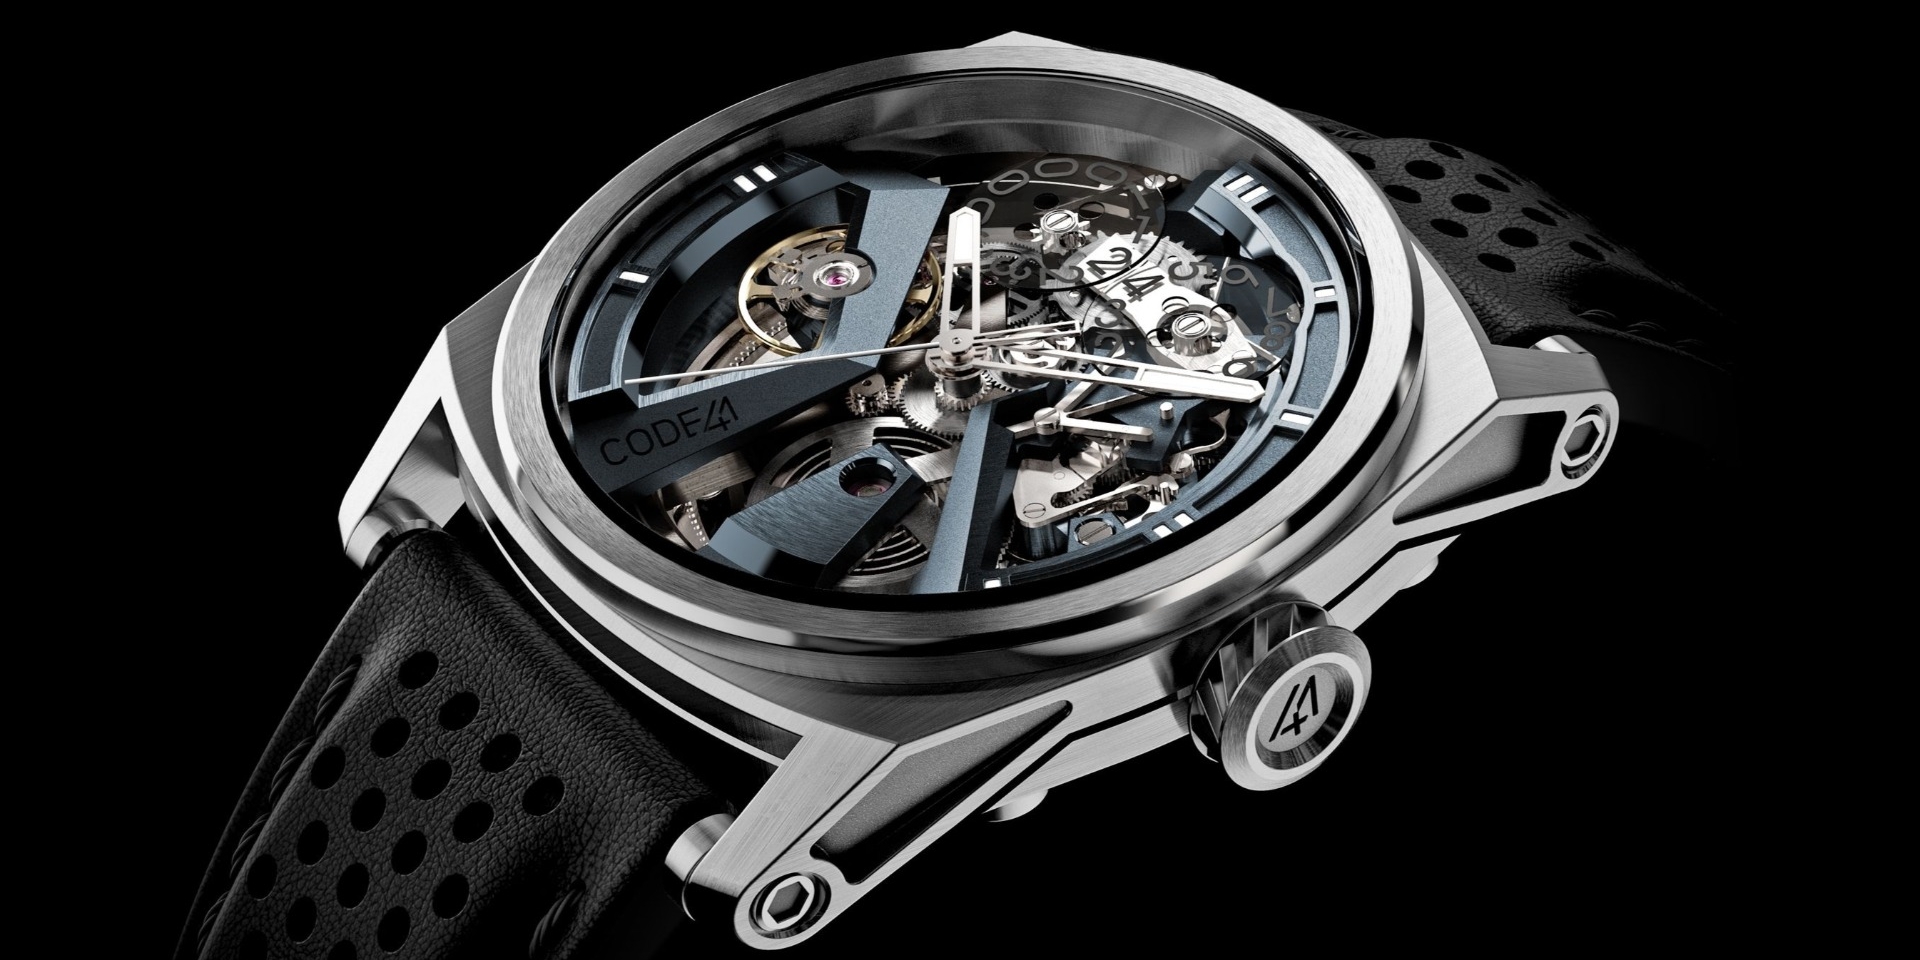 Uhren von CODE41 – Haute Horlogerie für jedermann?